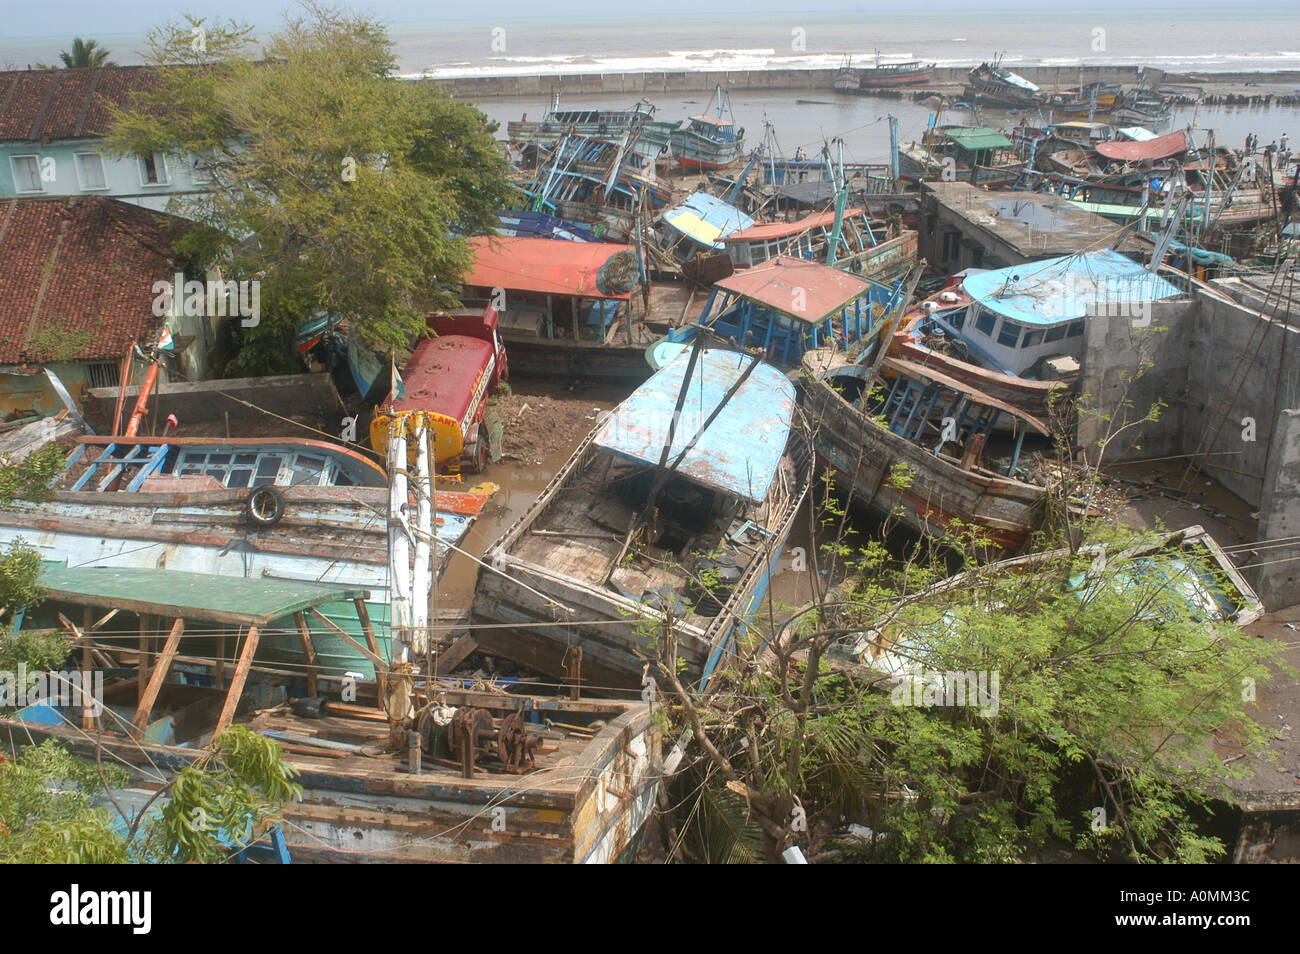 Bateaux sur terre par une catastrophe naturelle Tsunami séisme sur mer Nagapattinum Velankanni Tamil Nadu Inde Océan Indien Banque D'Images